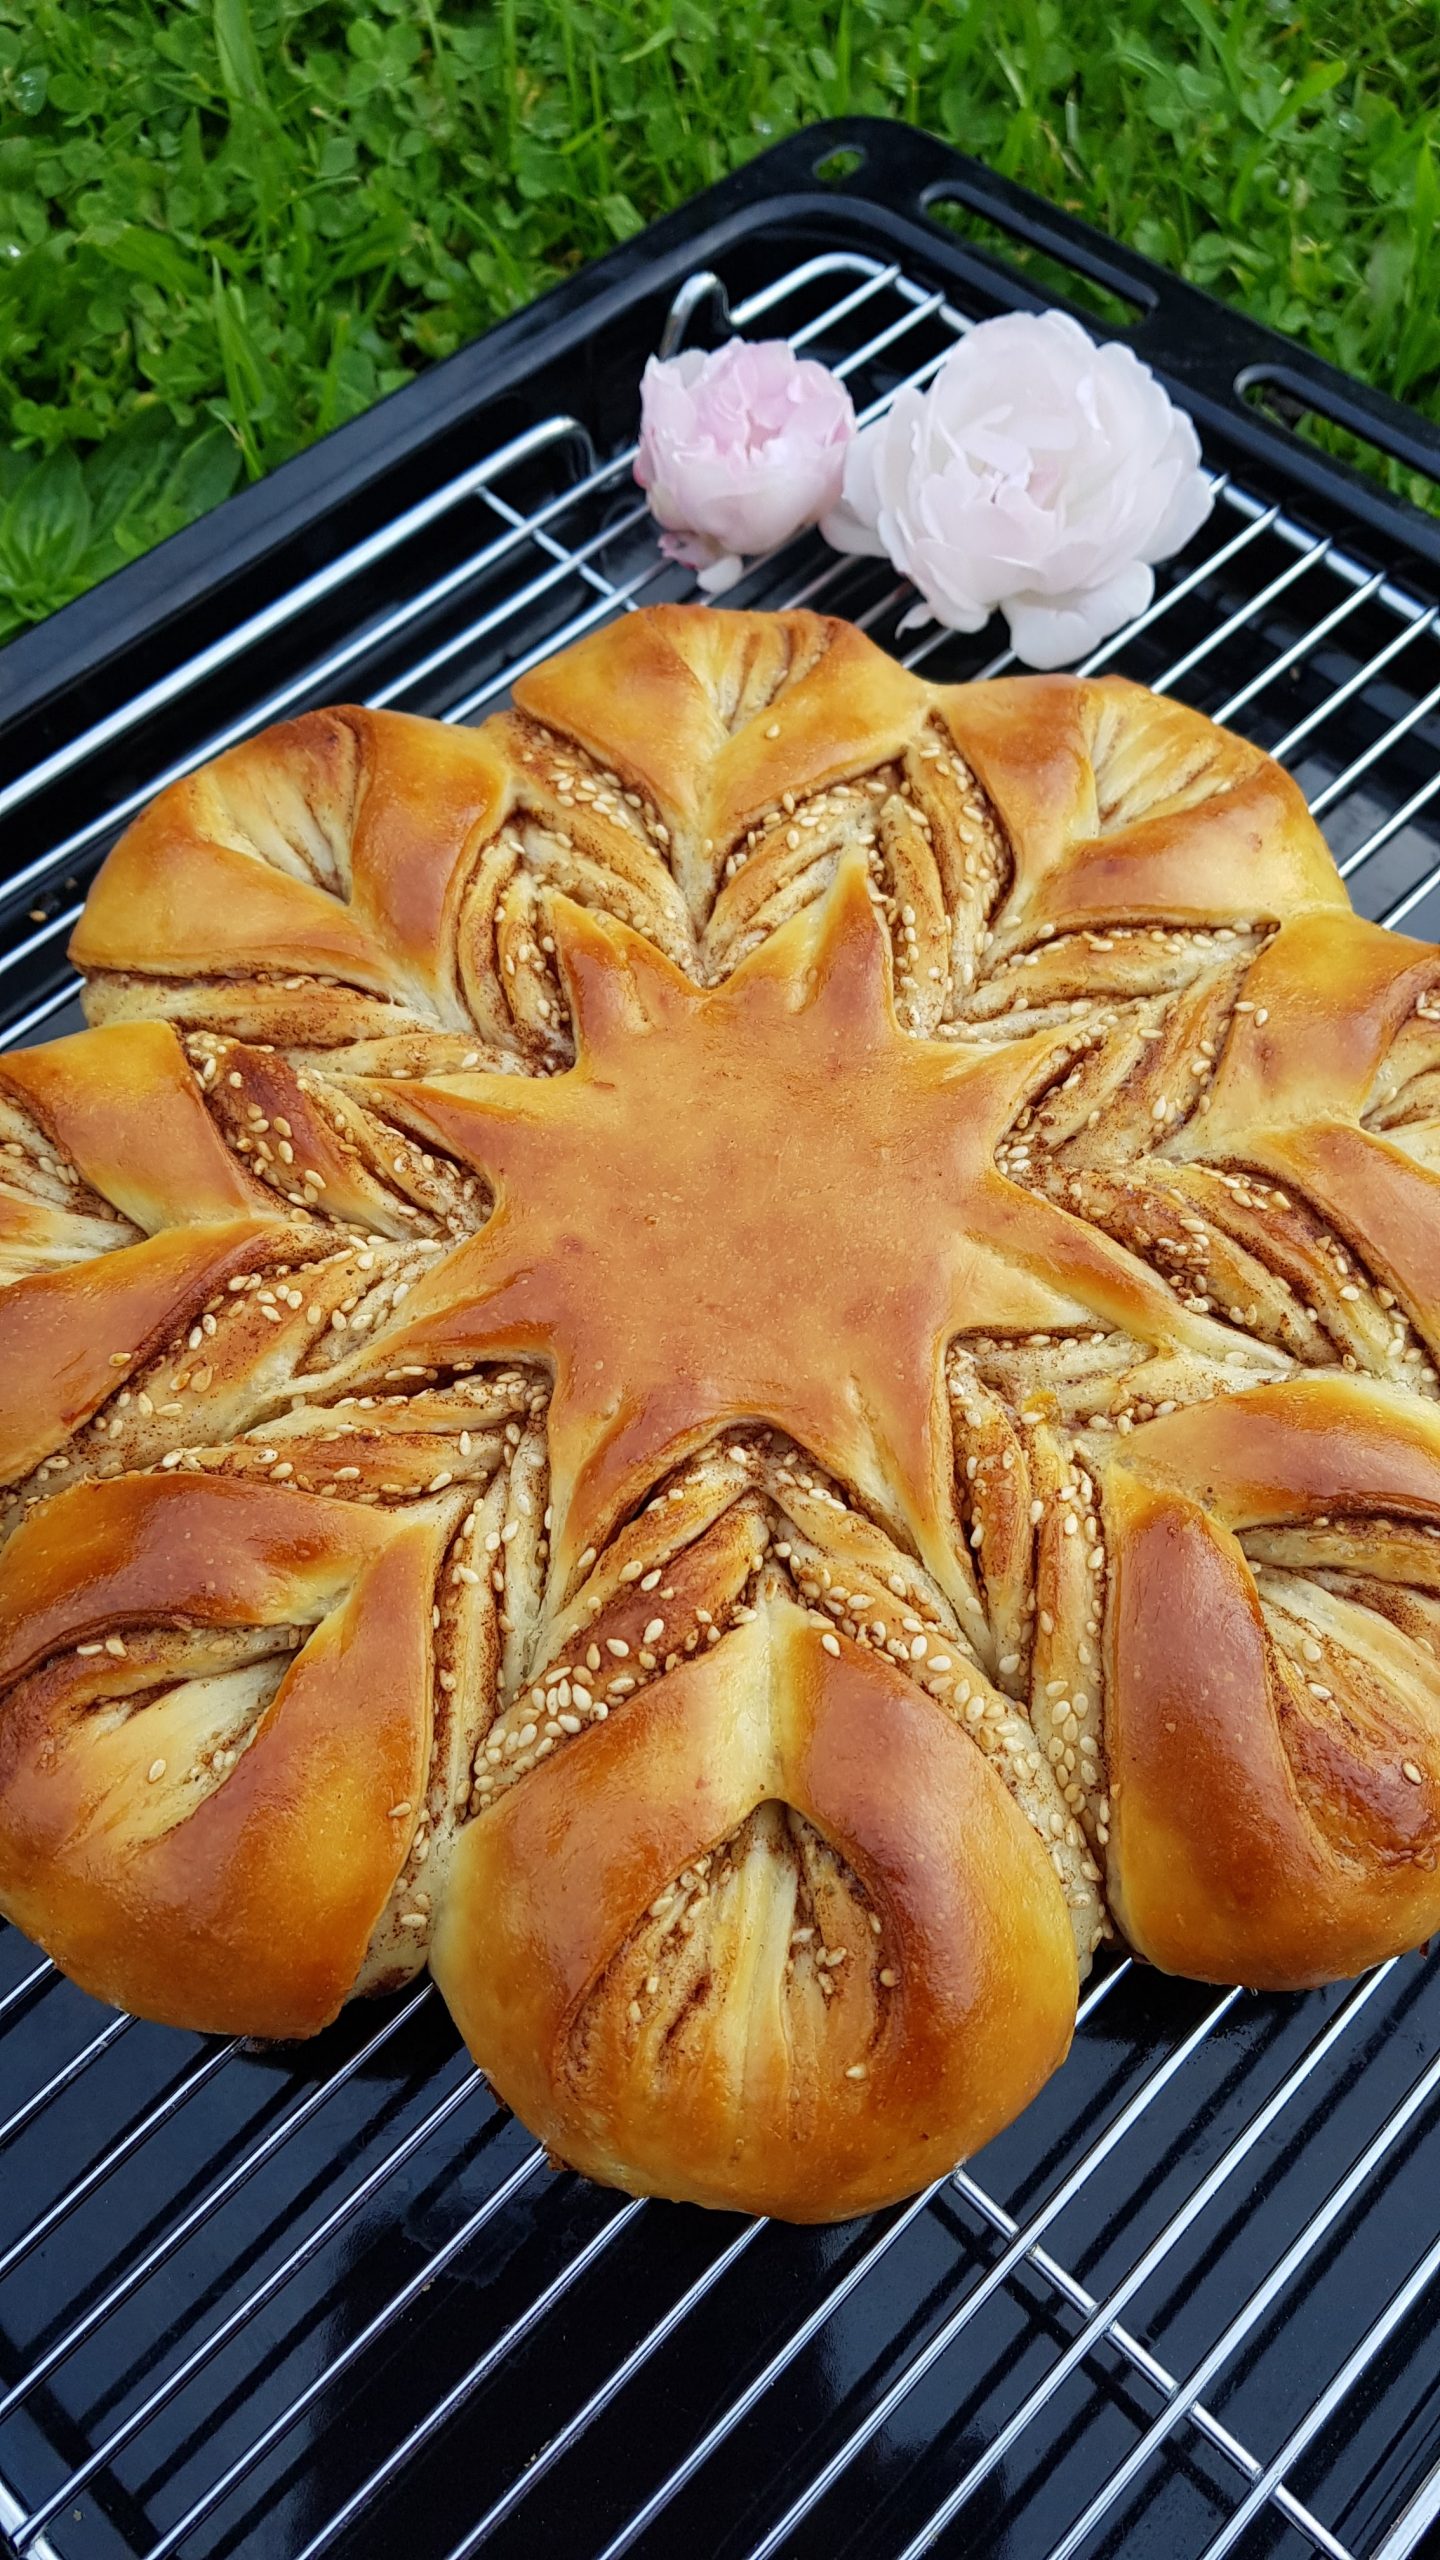 Bánh mì hình sao - tạo hình tuyệt đẹp